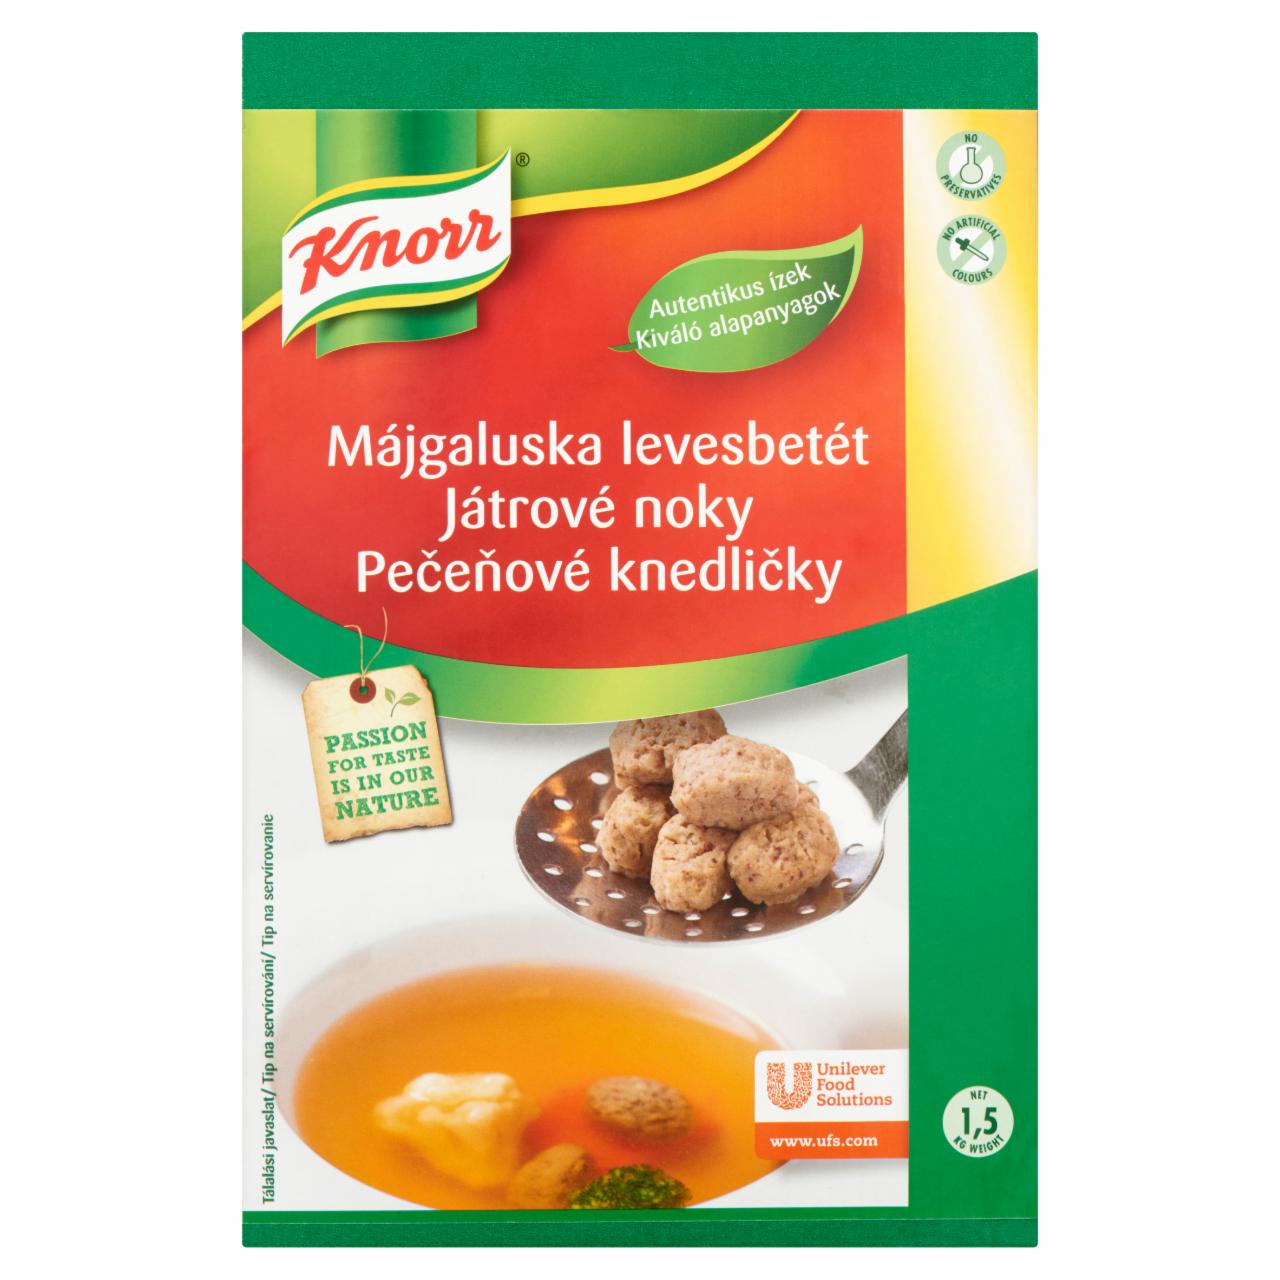 Képek - Knorr májgaluska levesbetét 1,5 kg